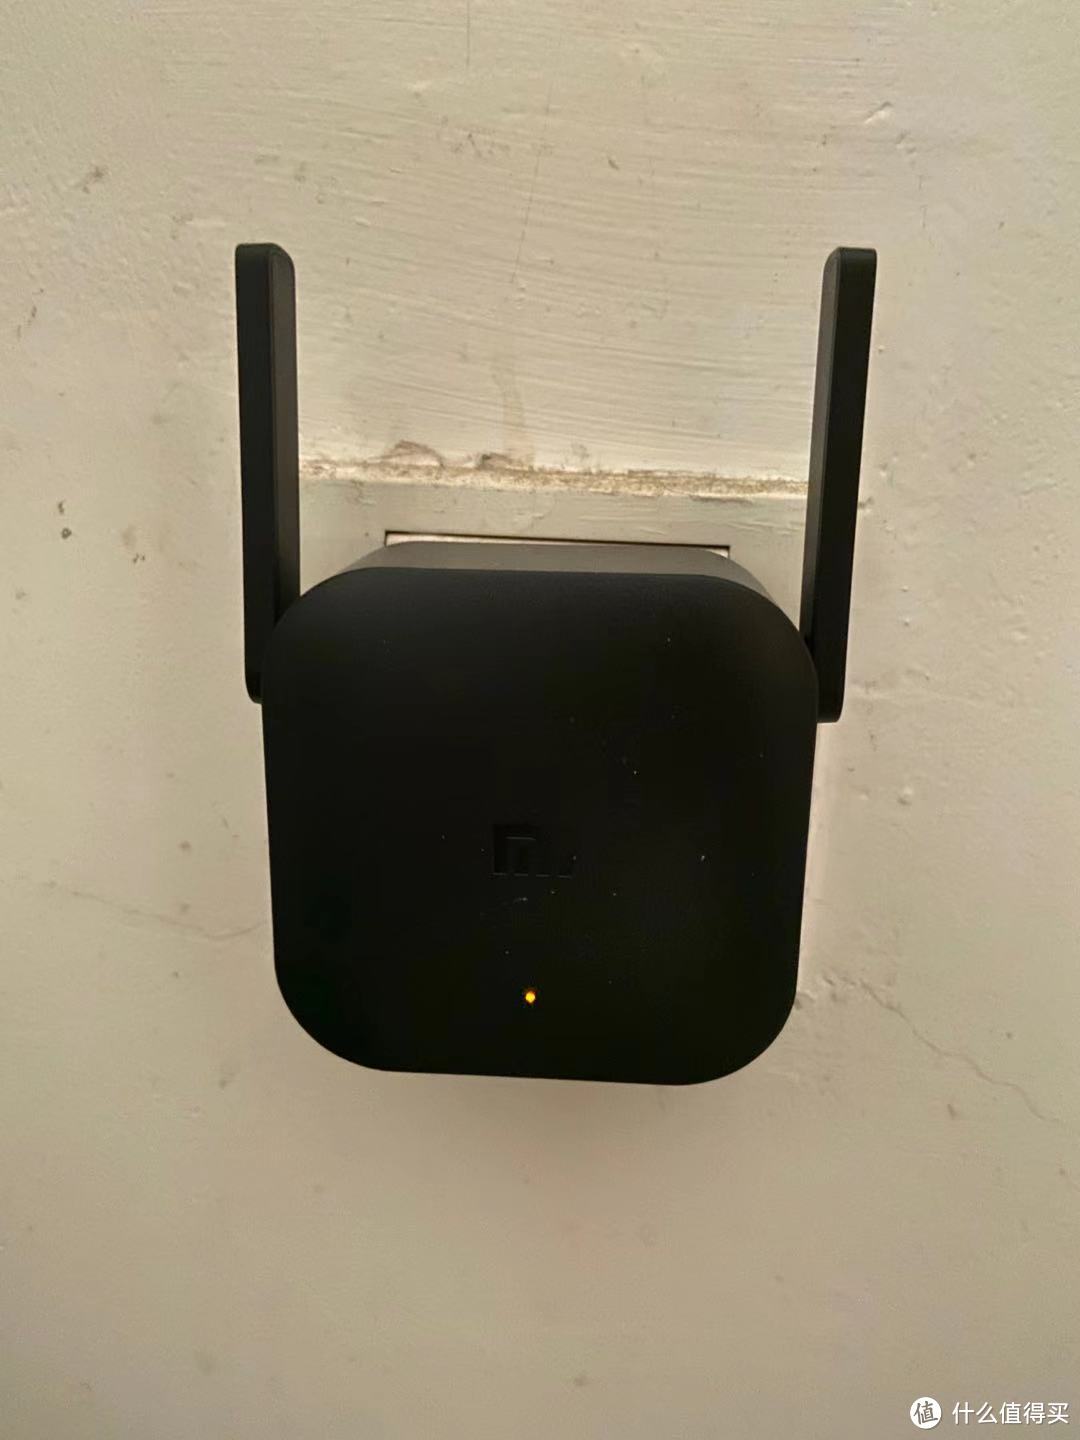 解决WIFI问题---小米wifi放大器pro wifi信号增强器入手记